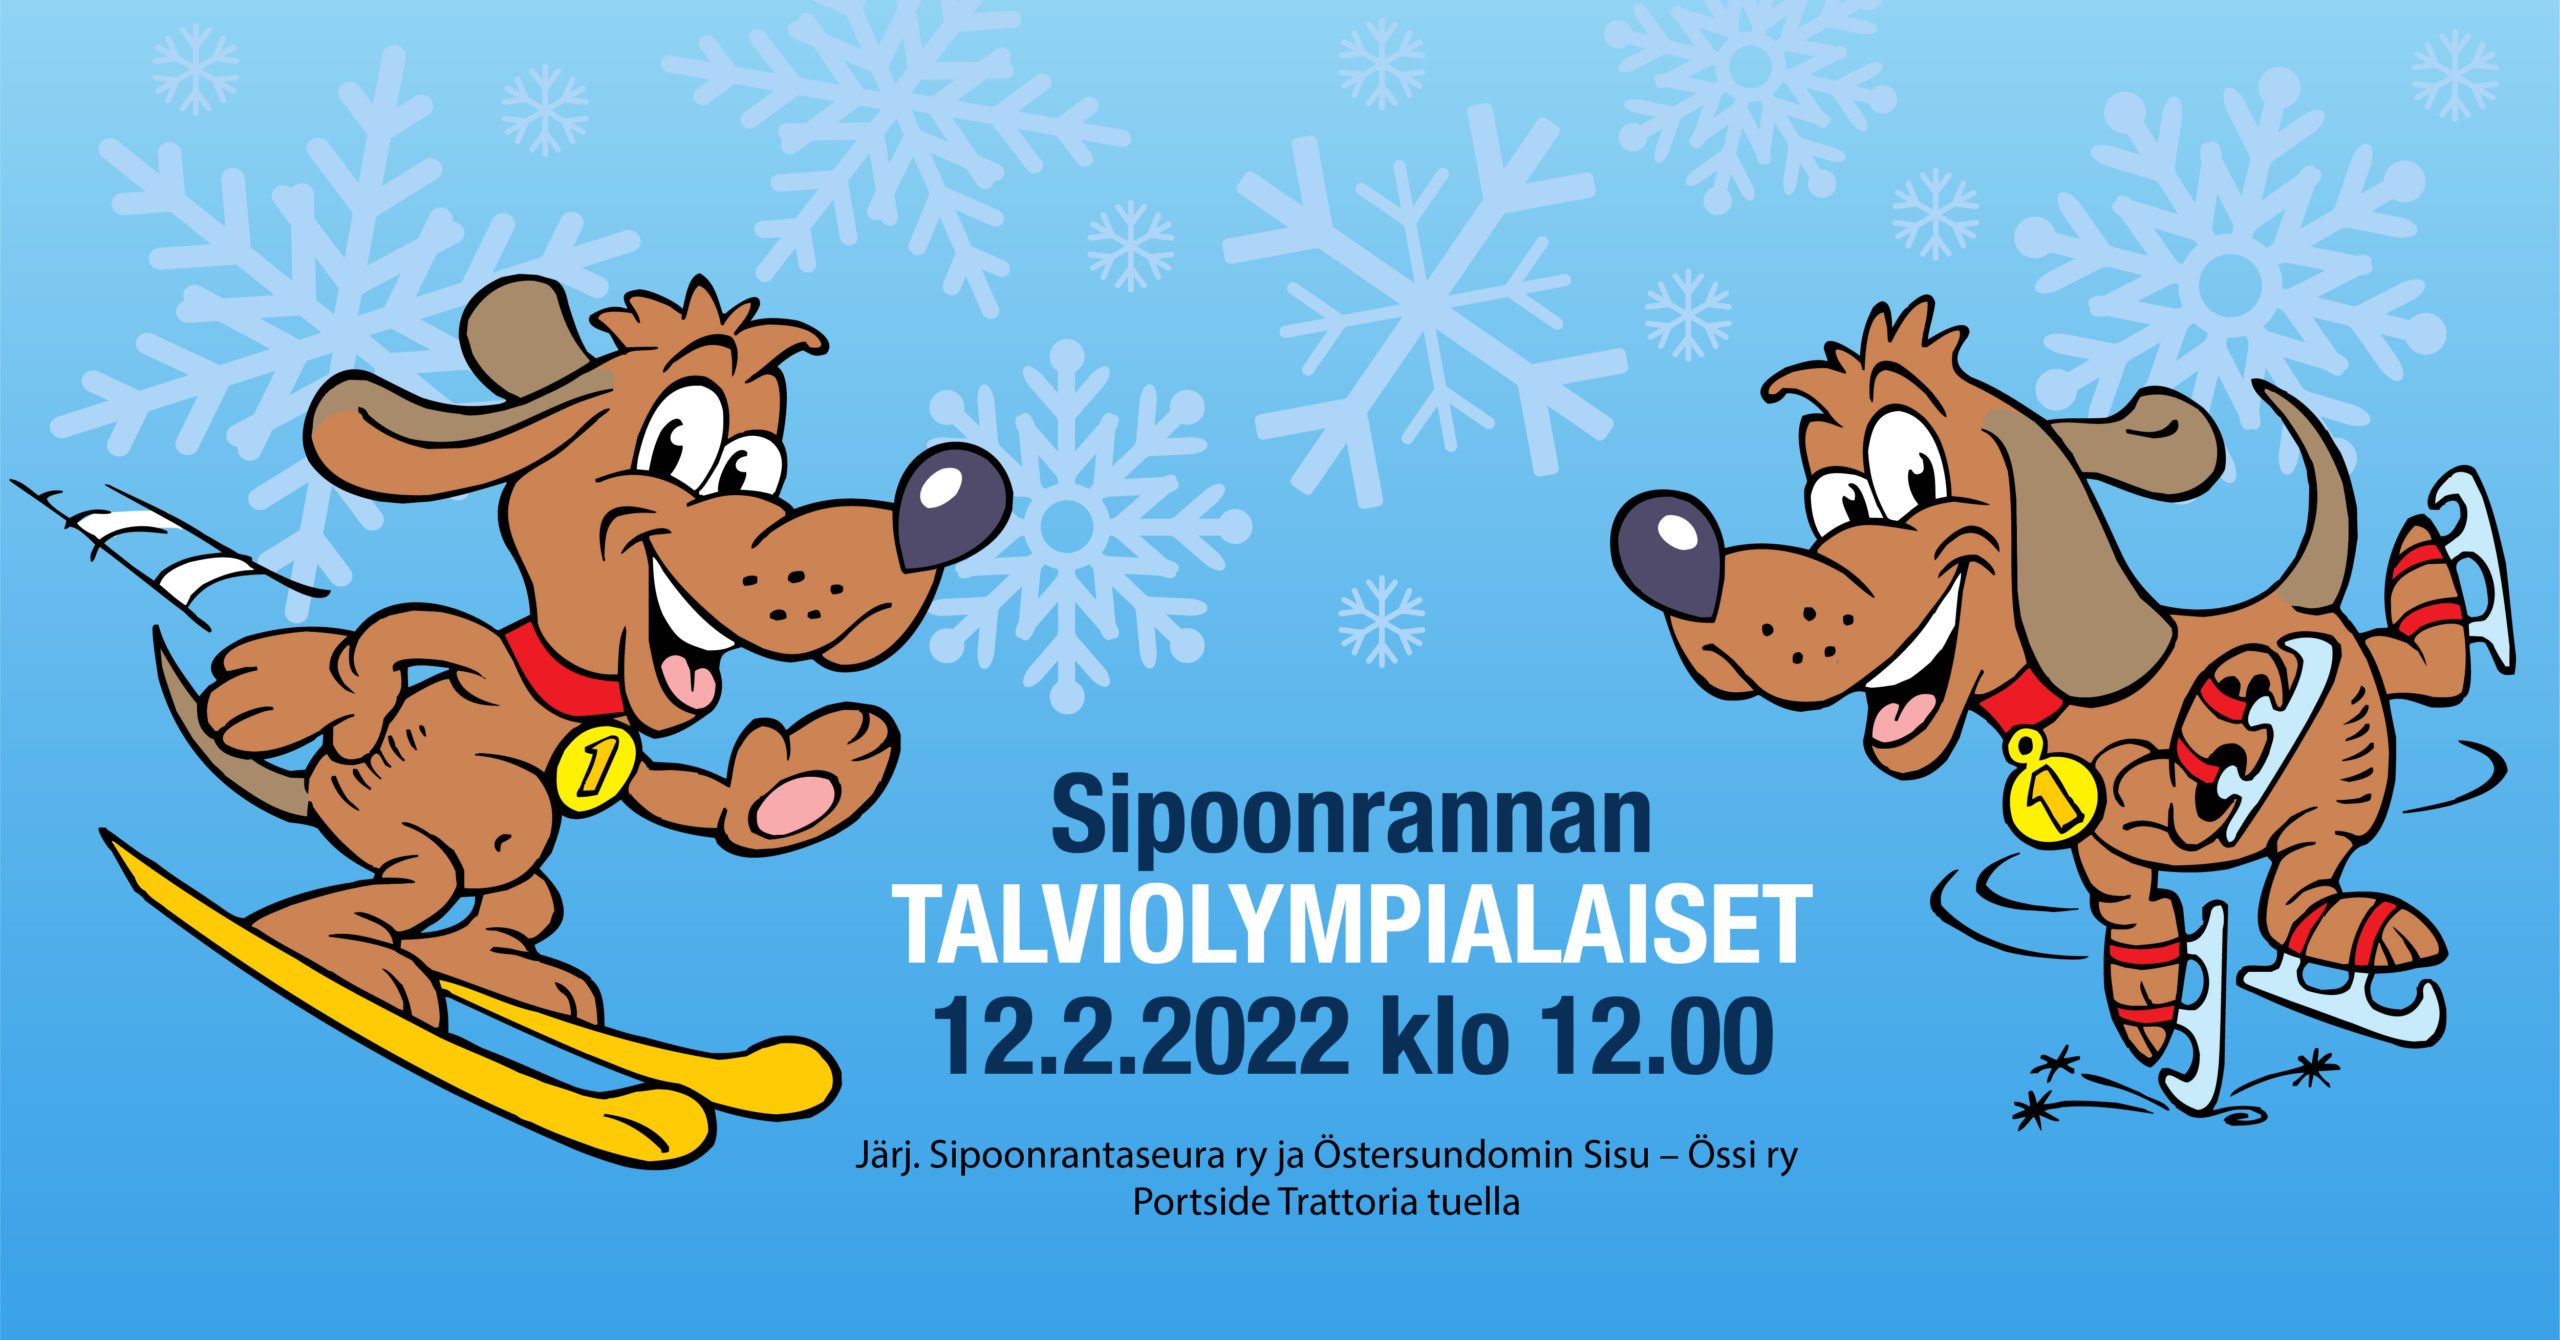 Featured image for “12.2. klo 12-14 Talviolympialaiset Sipoonrannassa”